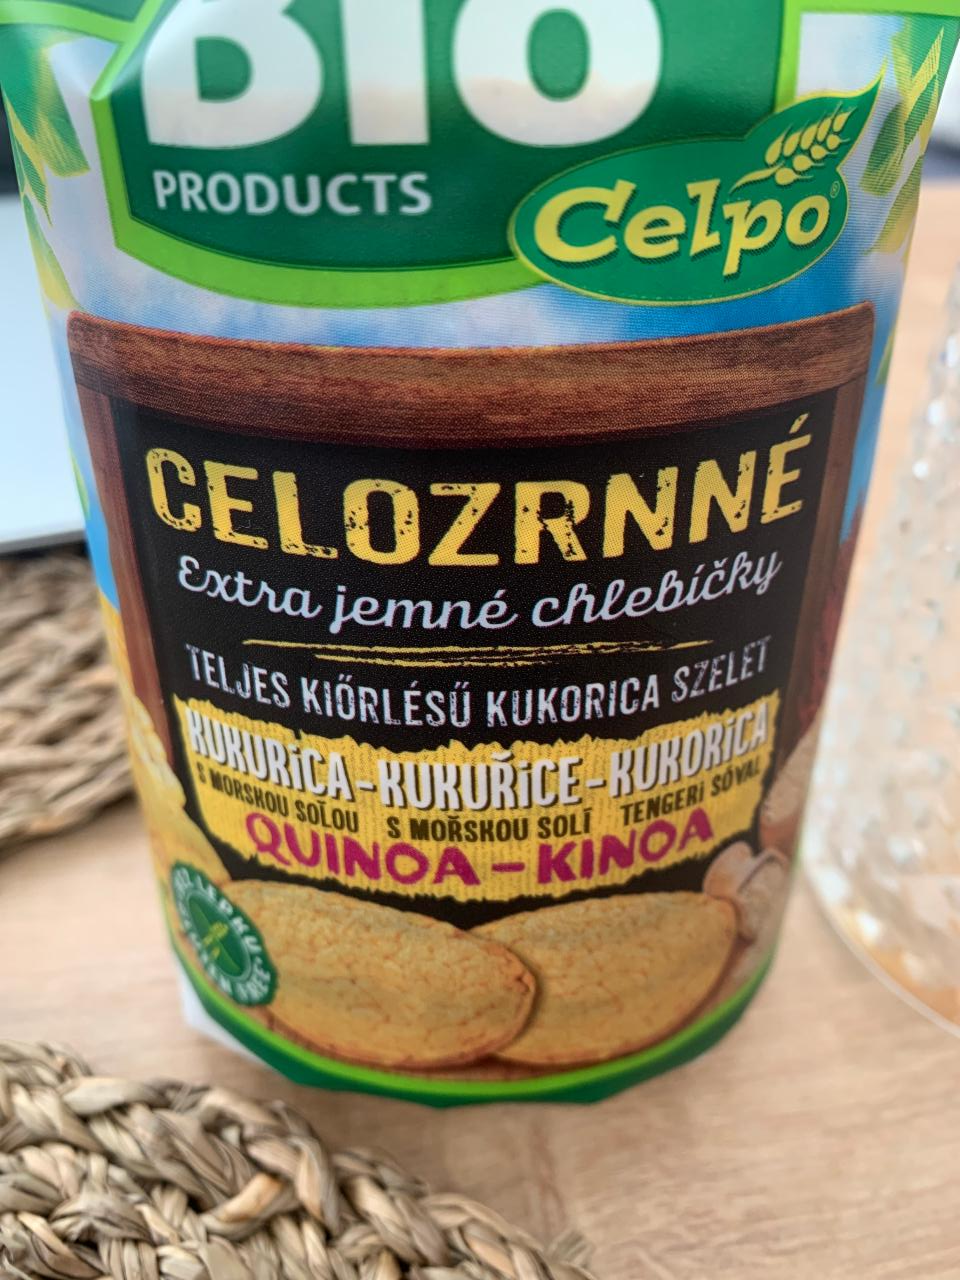 Fotografie - Celozrnné extra jemné chlebíčky kukurica s morskou soľou quinoa Celpo